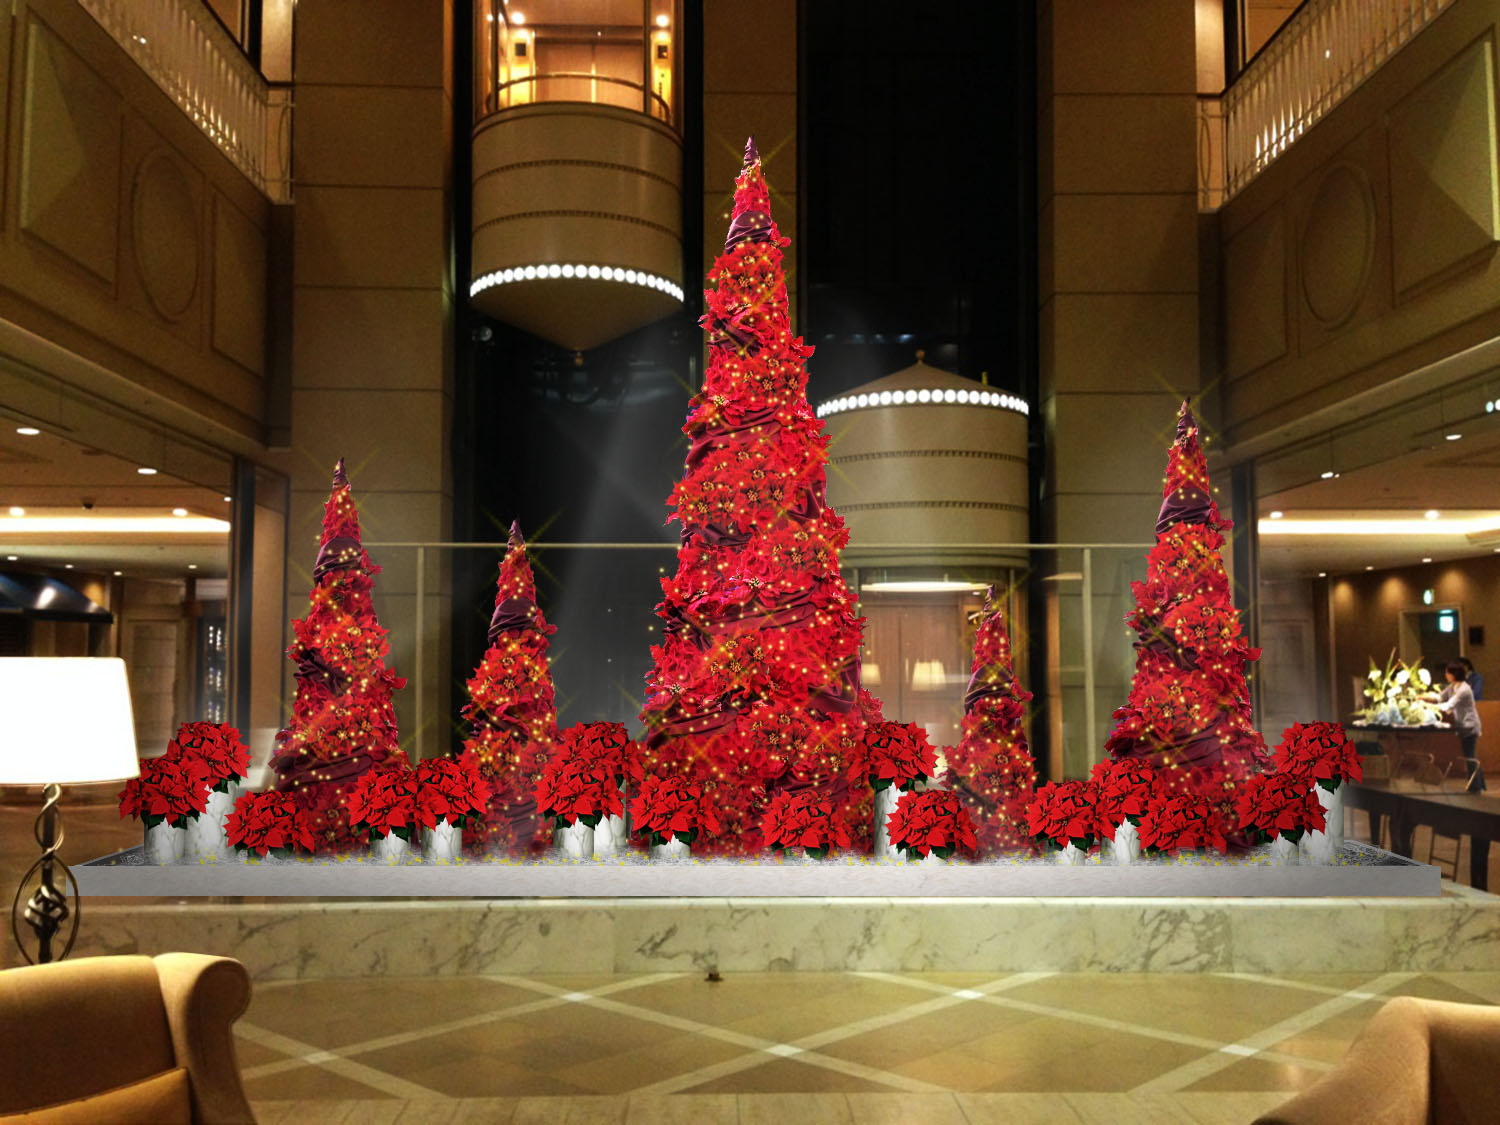 神戸メリケンパークオリエンタルホテル ドラマチックで華やかな赤いクリスマスツリーが登場 ホテルで過ごすとっておきのクリスマス プラン19 株式会社ホテルマネージメントジャパンのプレスリリース